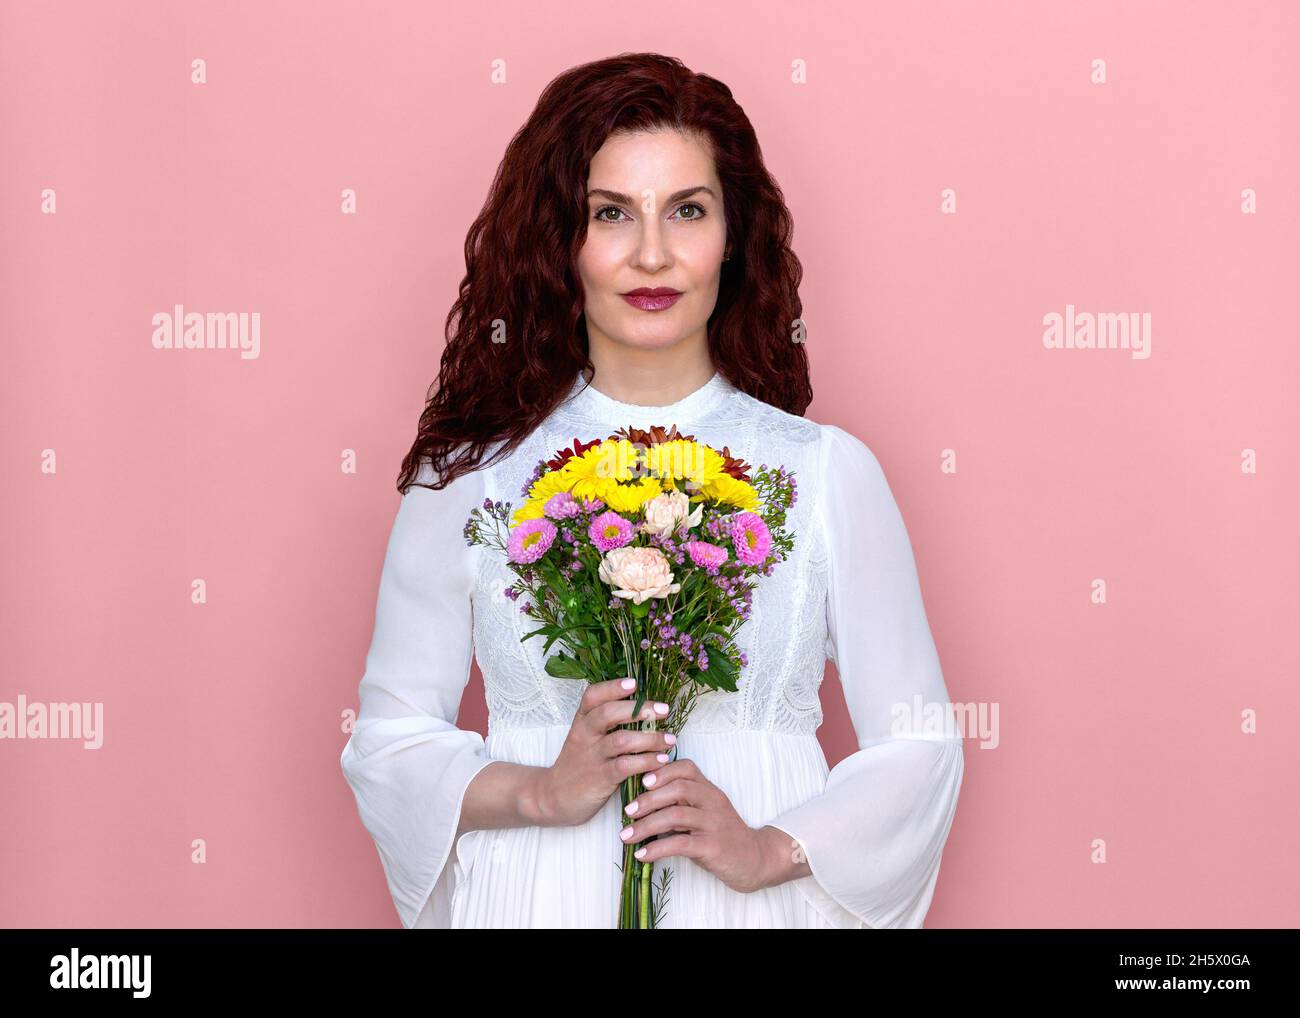 Frau hält Blumen vor ihrer Brust mit rosa Hintergrund. Romantische Studio Porträt der schönen Frau in weißem Kleid mit Blumenstrauß. Stockfoto